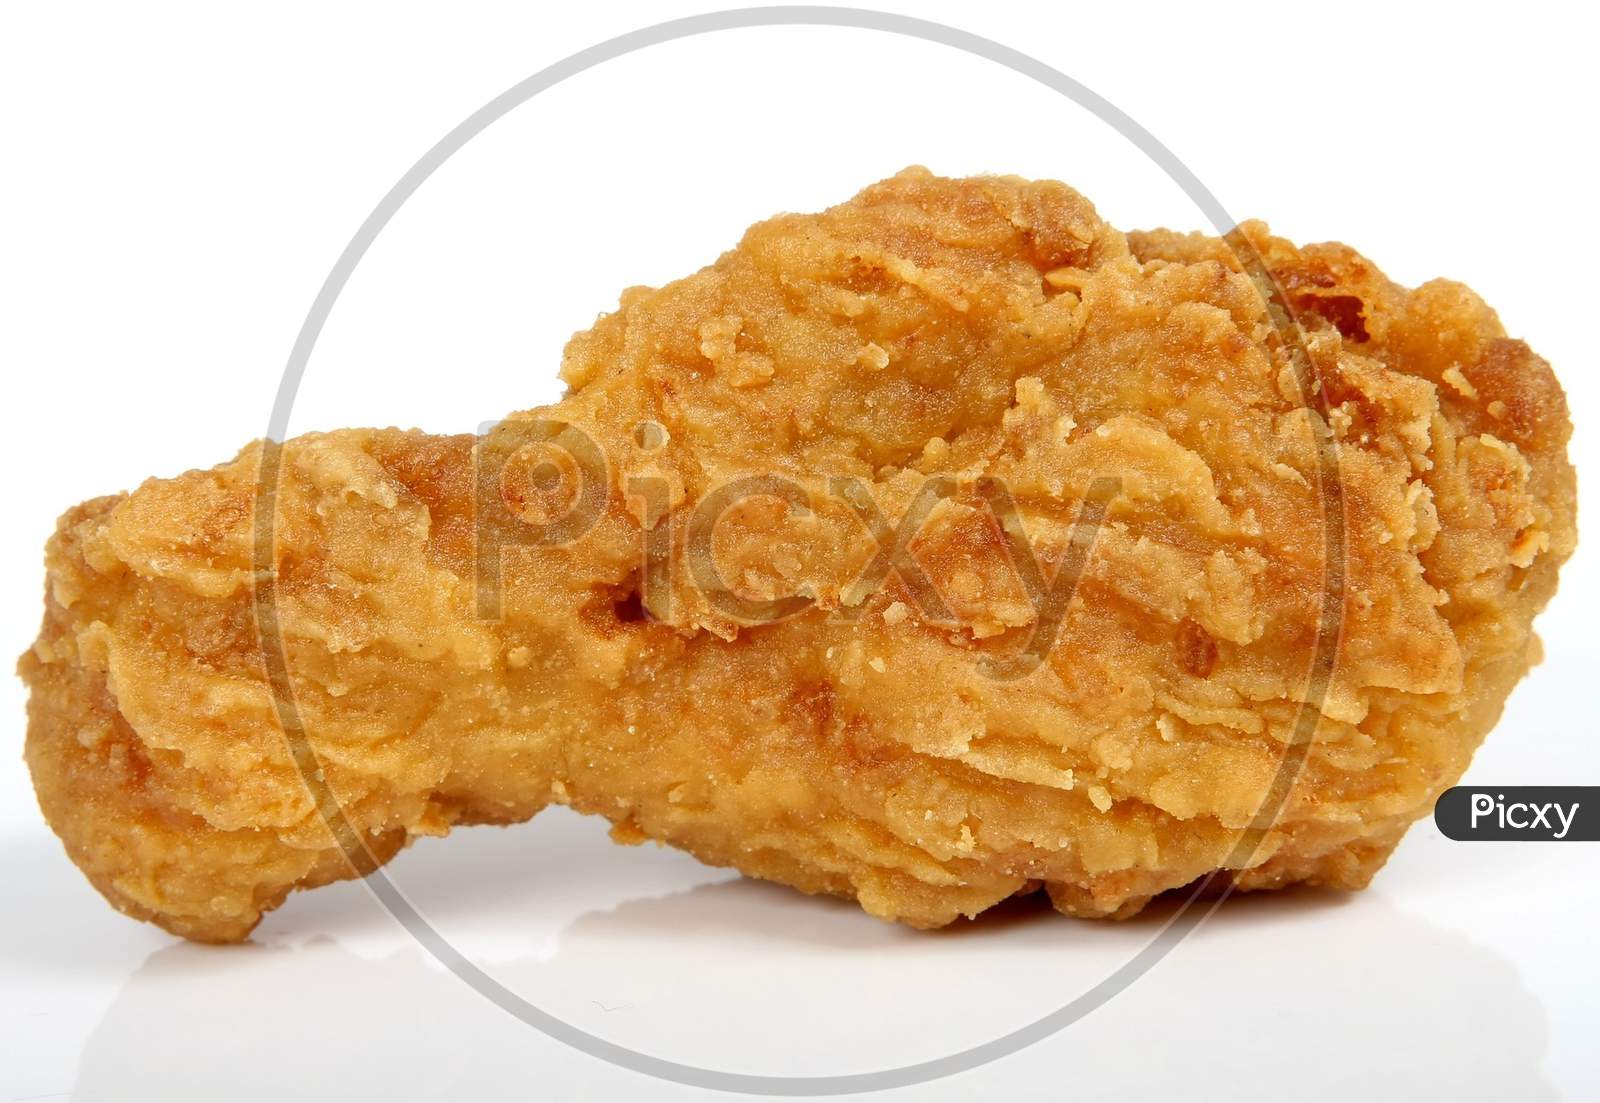 Fried chicken leg piece